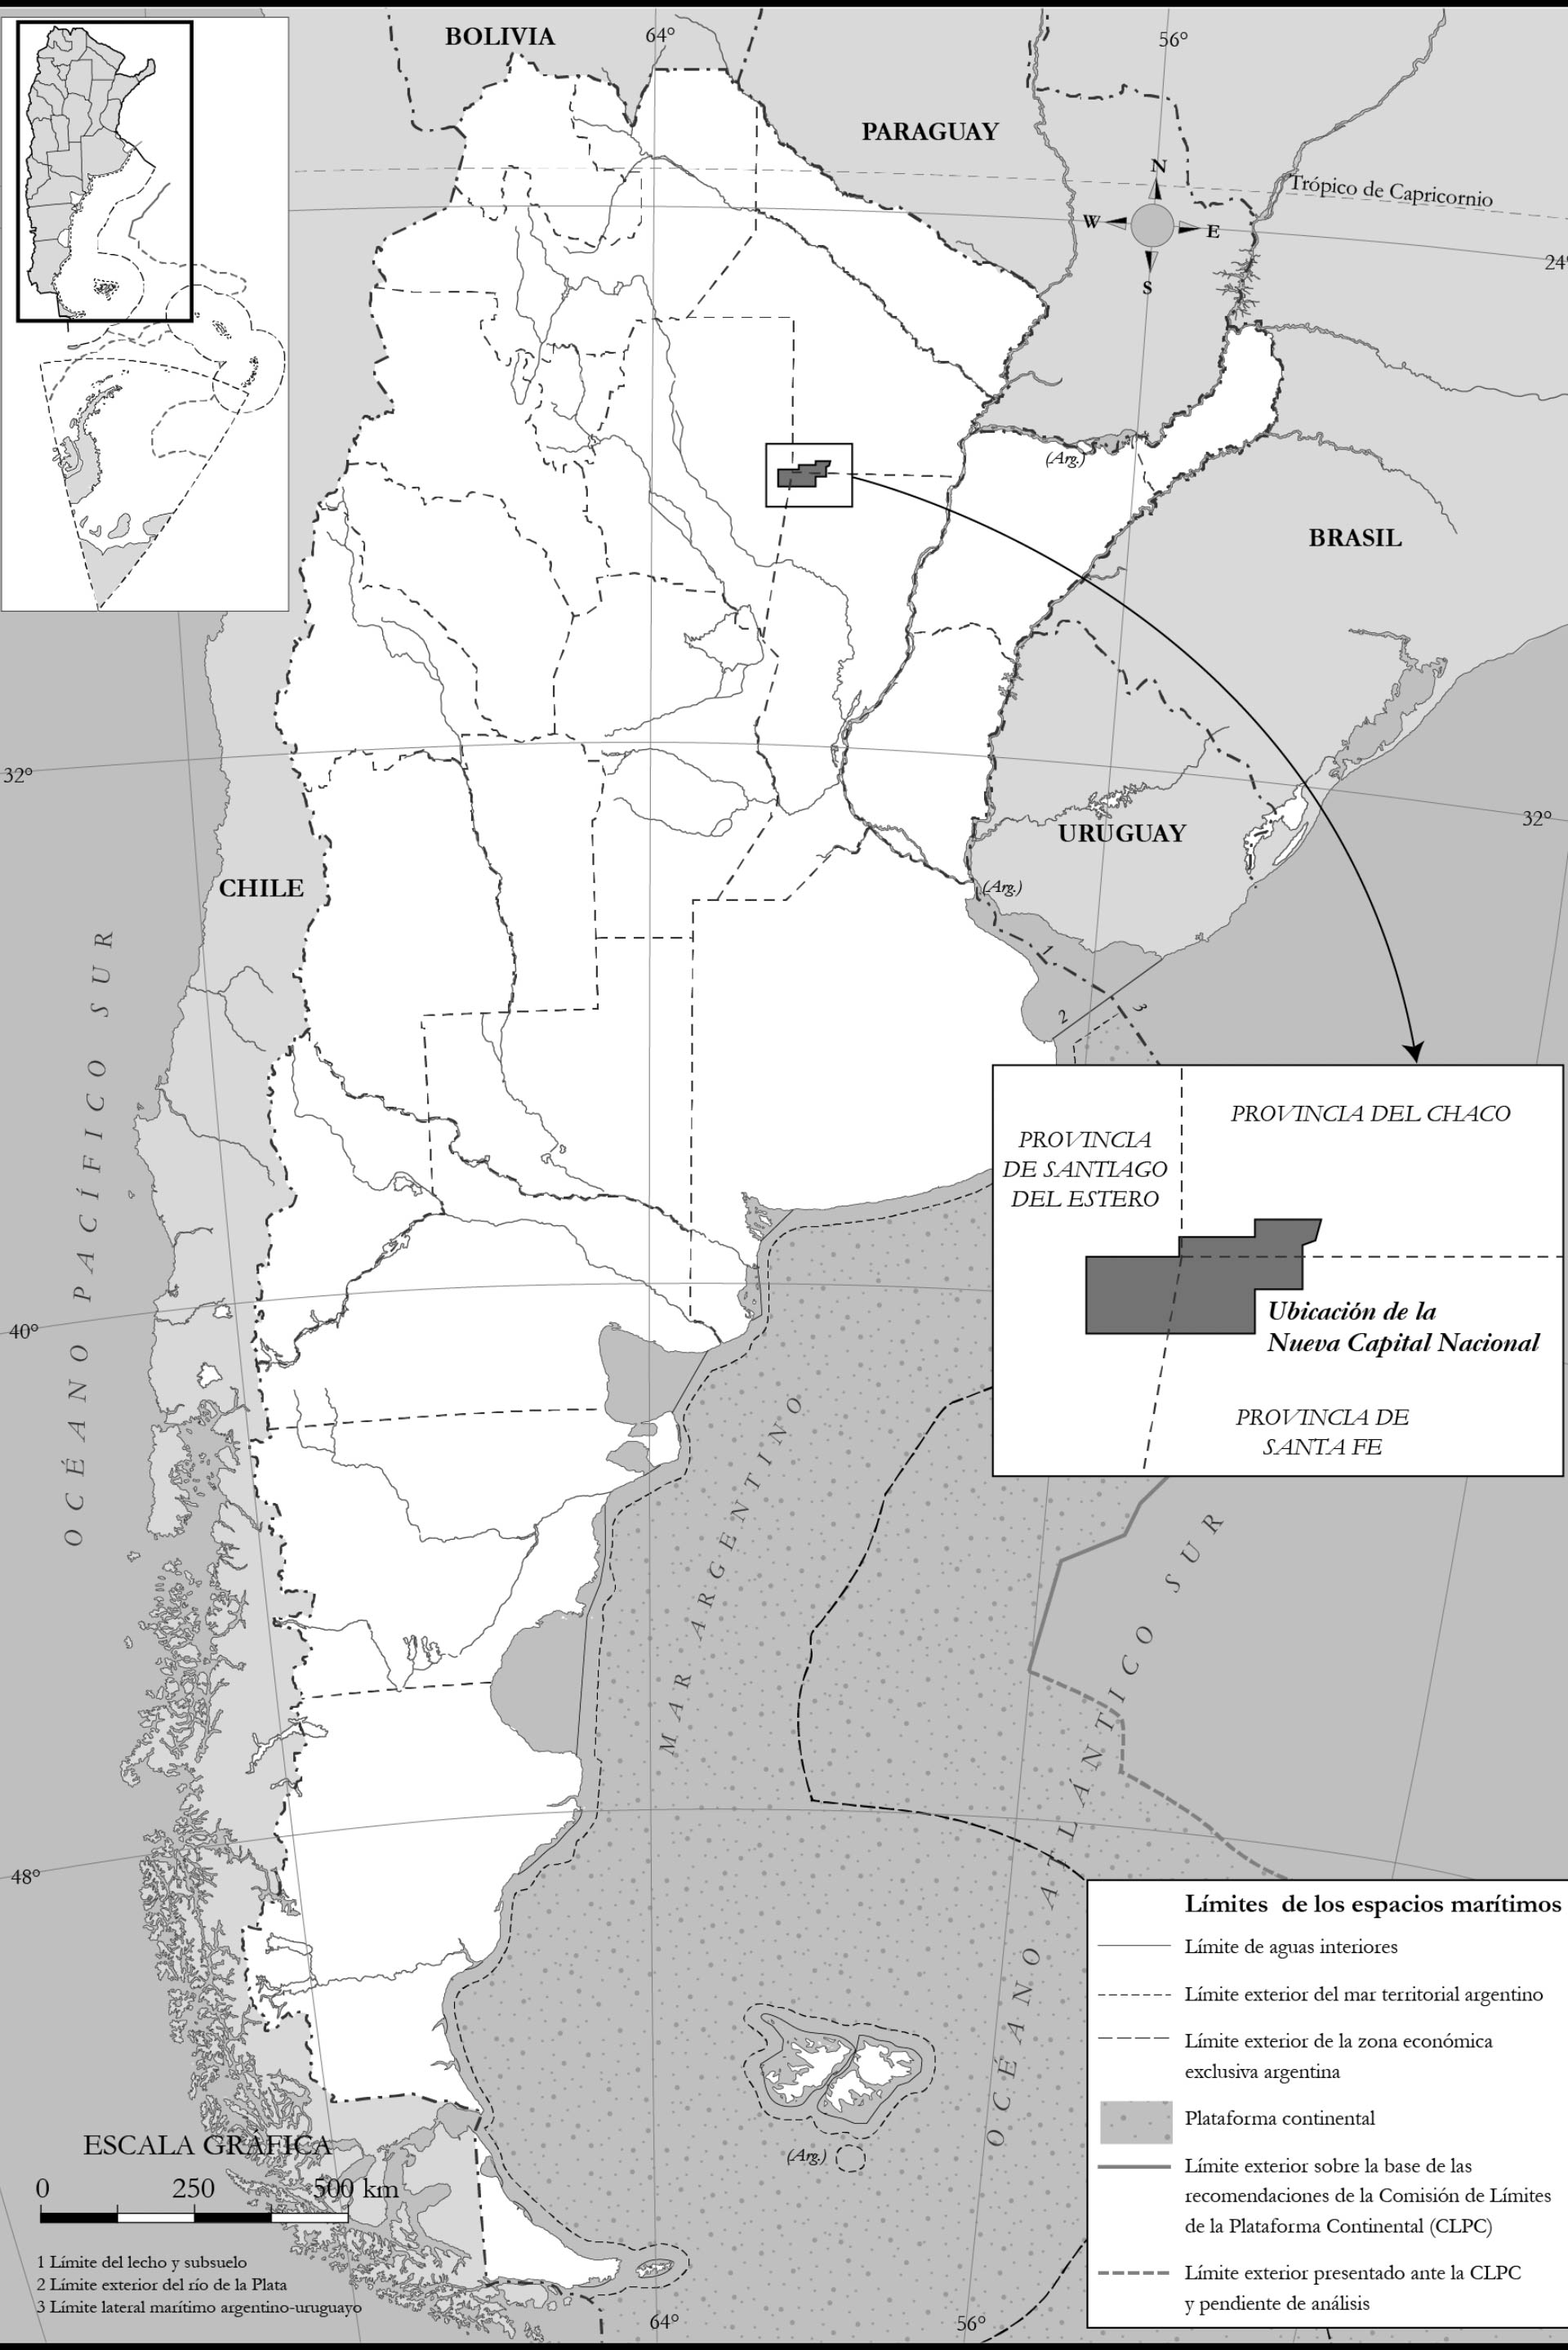 En su libro, Grabois incluye la ubicación que propone para la nueva capital argentina.